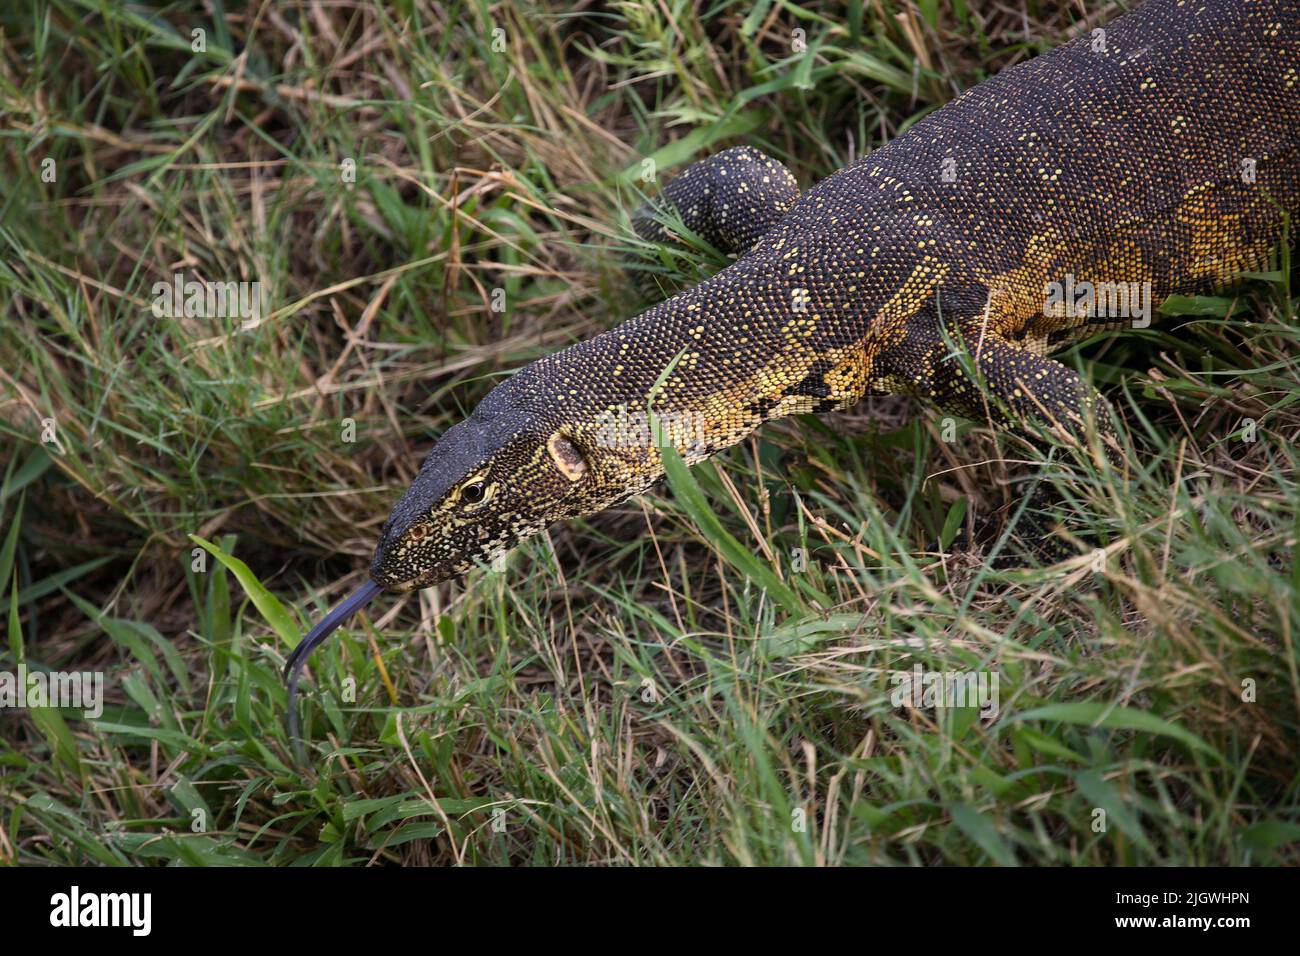 Nilwaran / Nile Monitor / Varanus niloticus Stock Photo